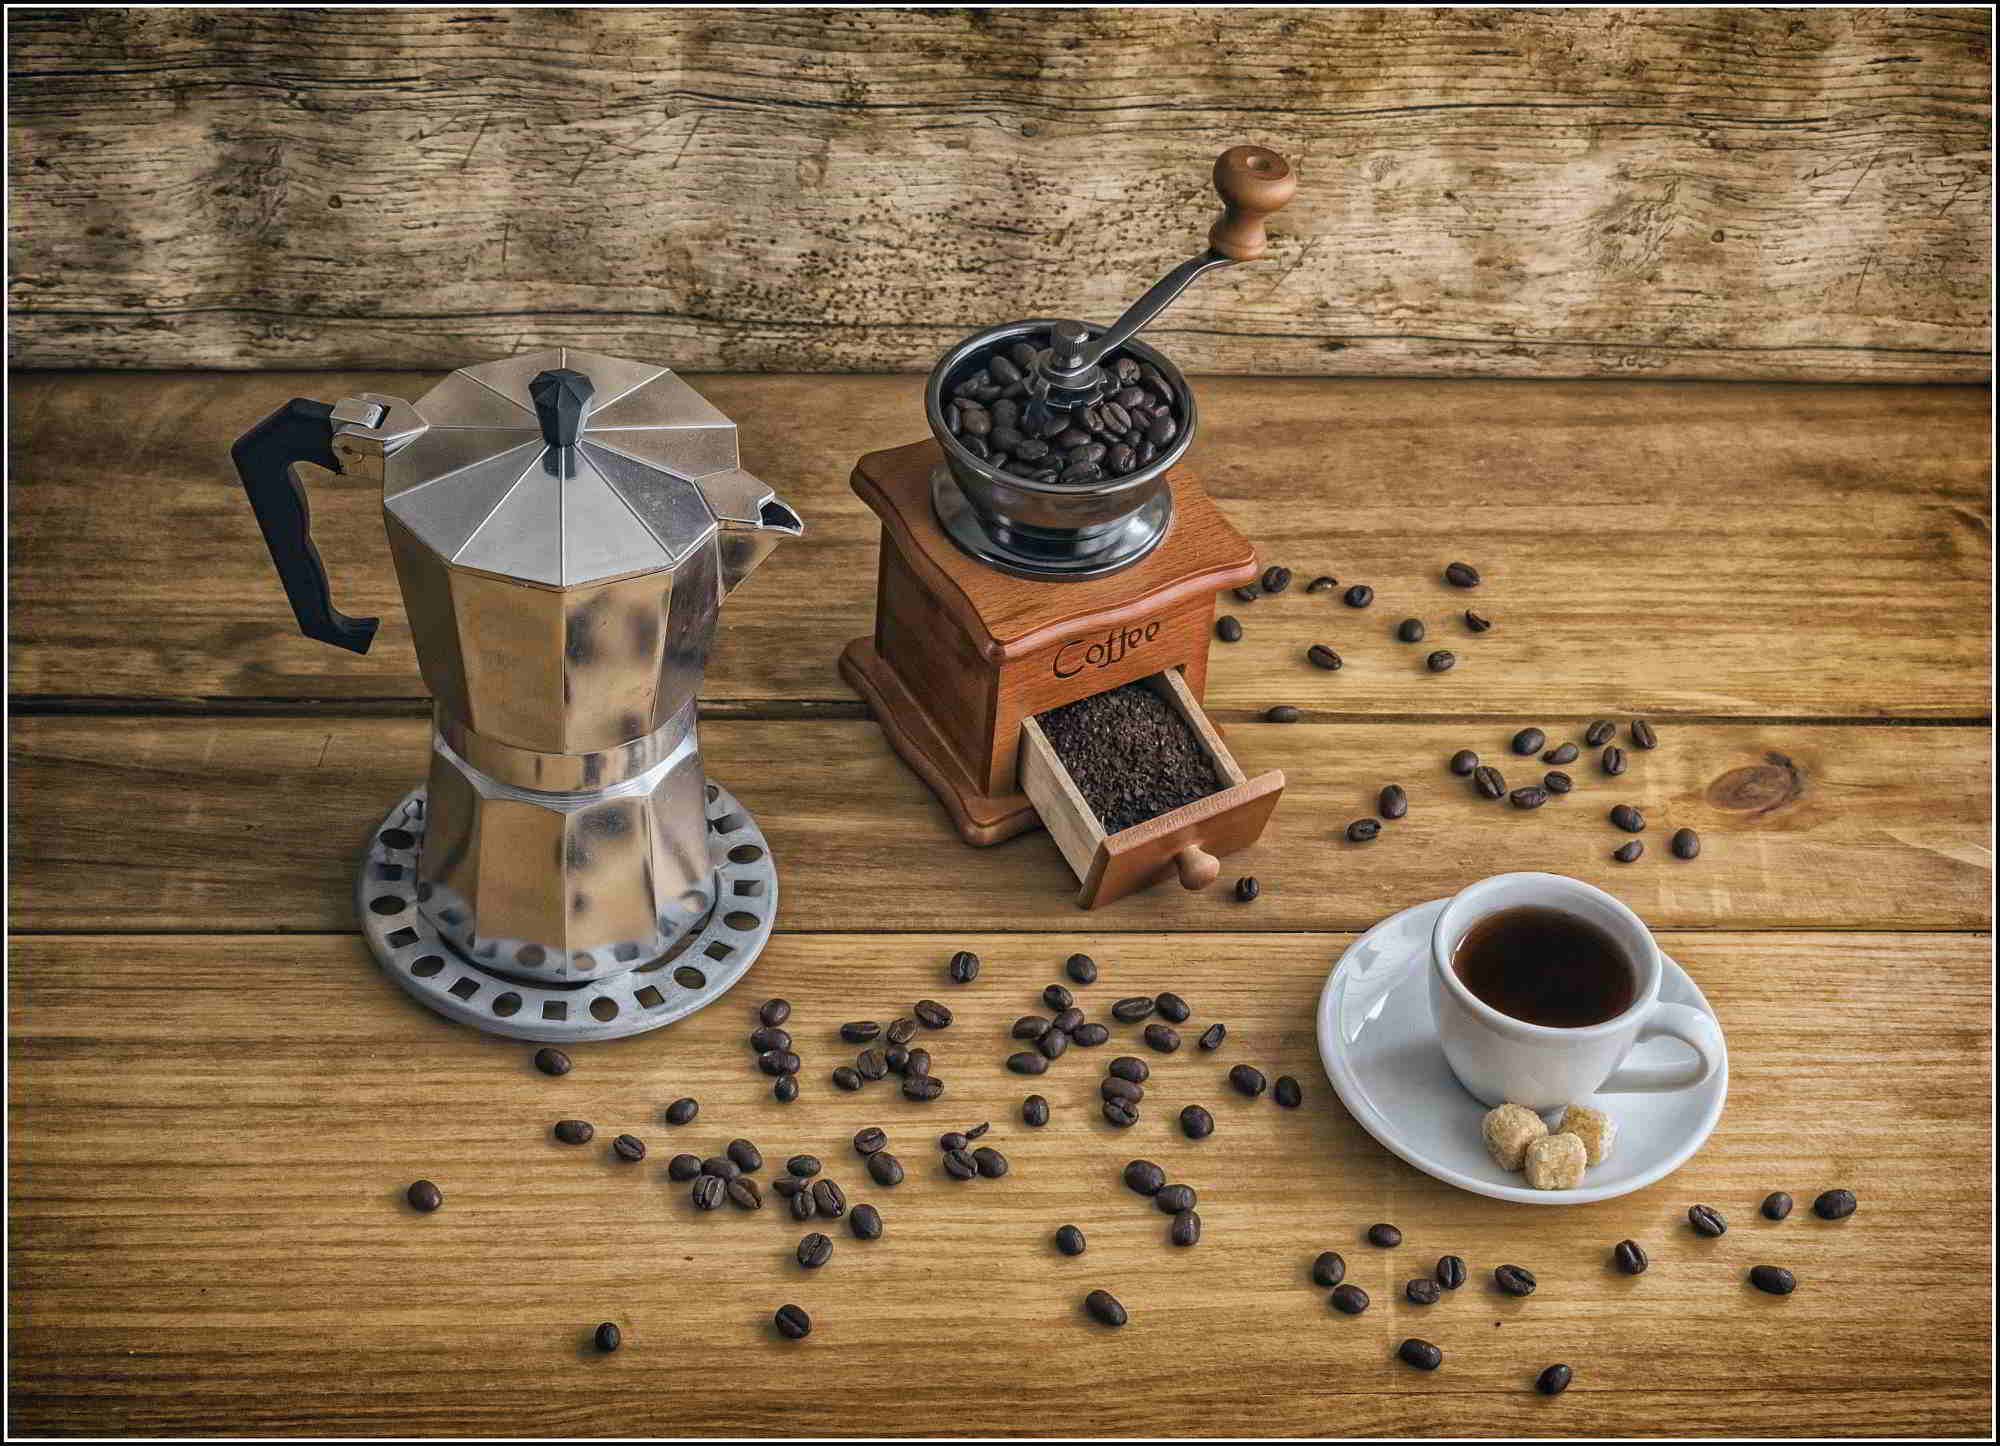 Kedudukan teratas penggiling kopi terbaik untuk rumah dan kafe pada tahun 2020